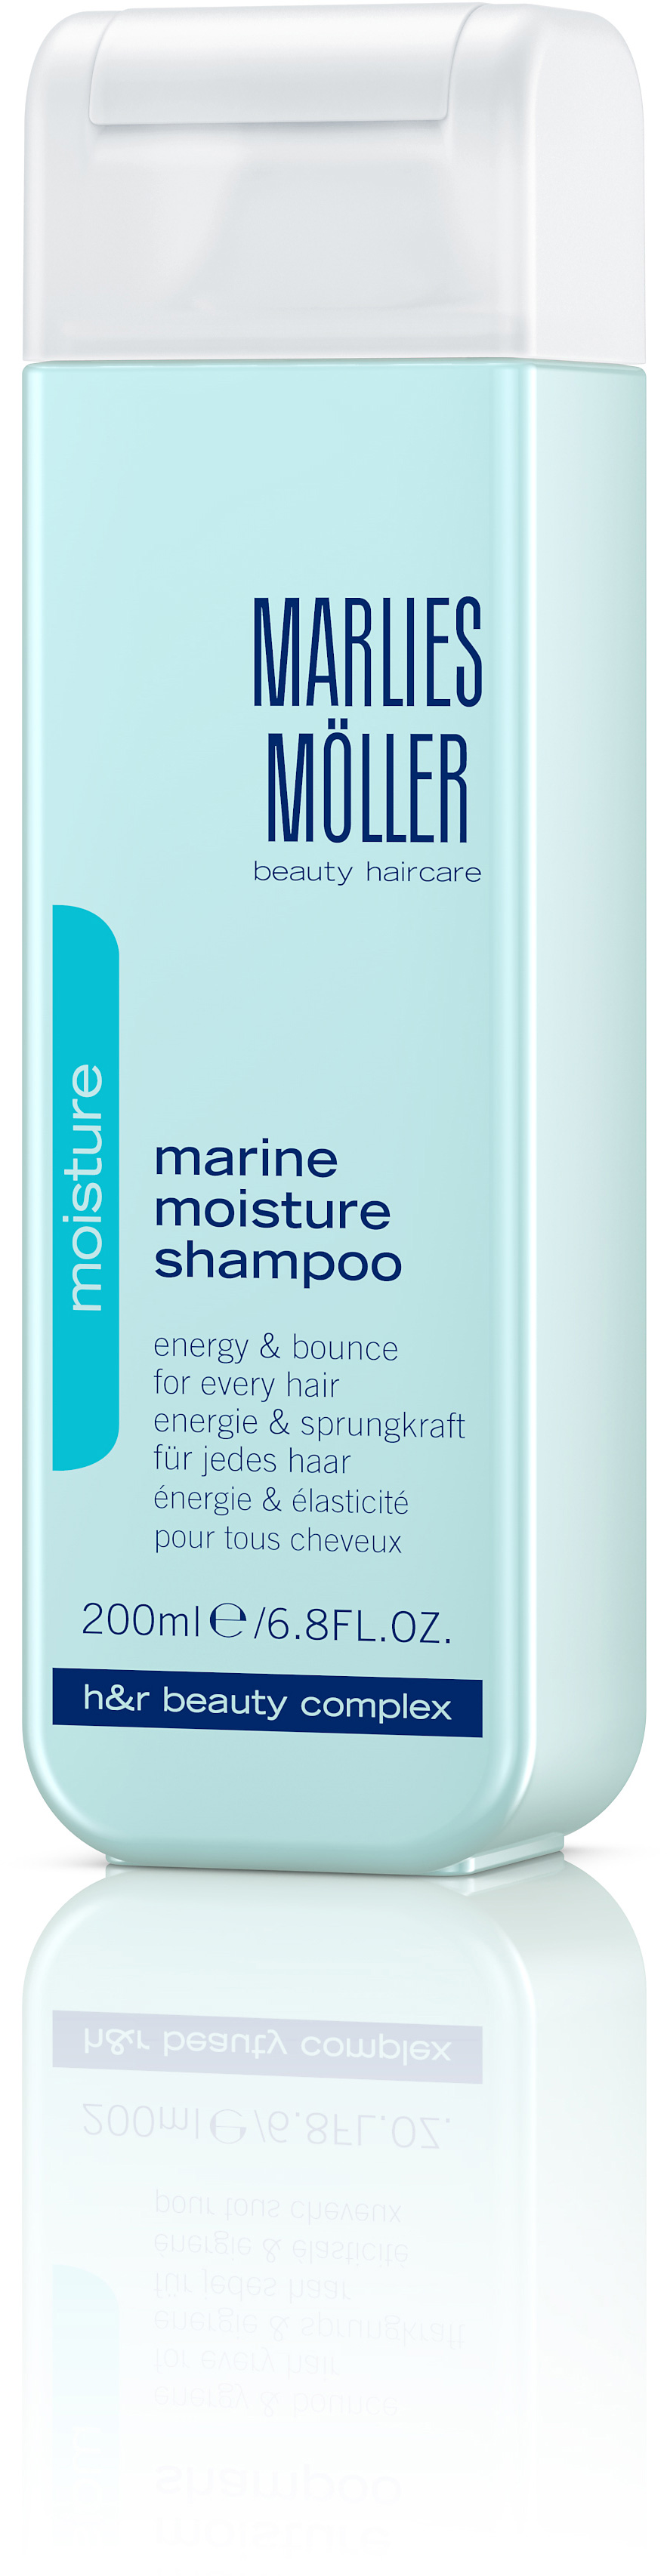 Marlies Möller Care Moist Marine Shampoo 200 ml